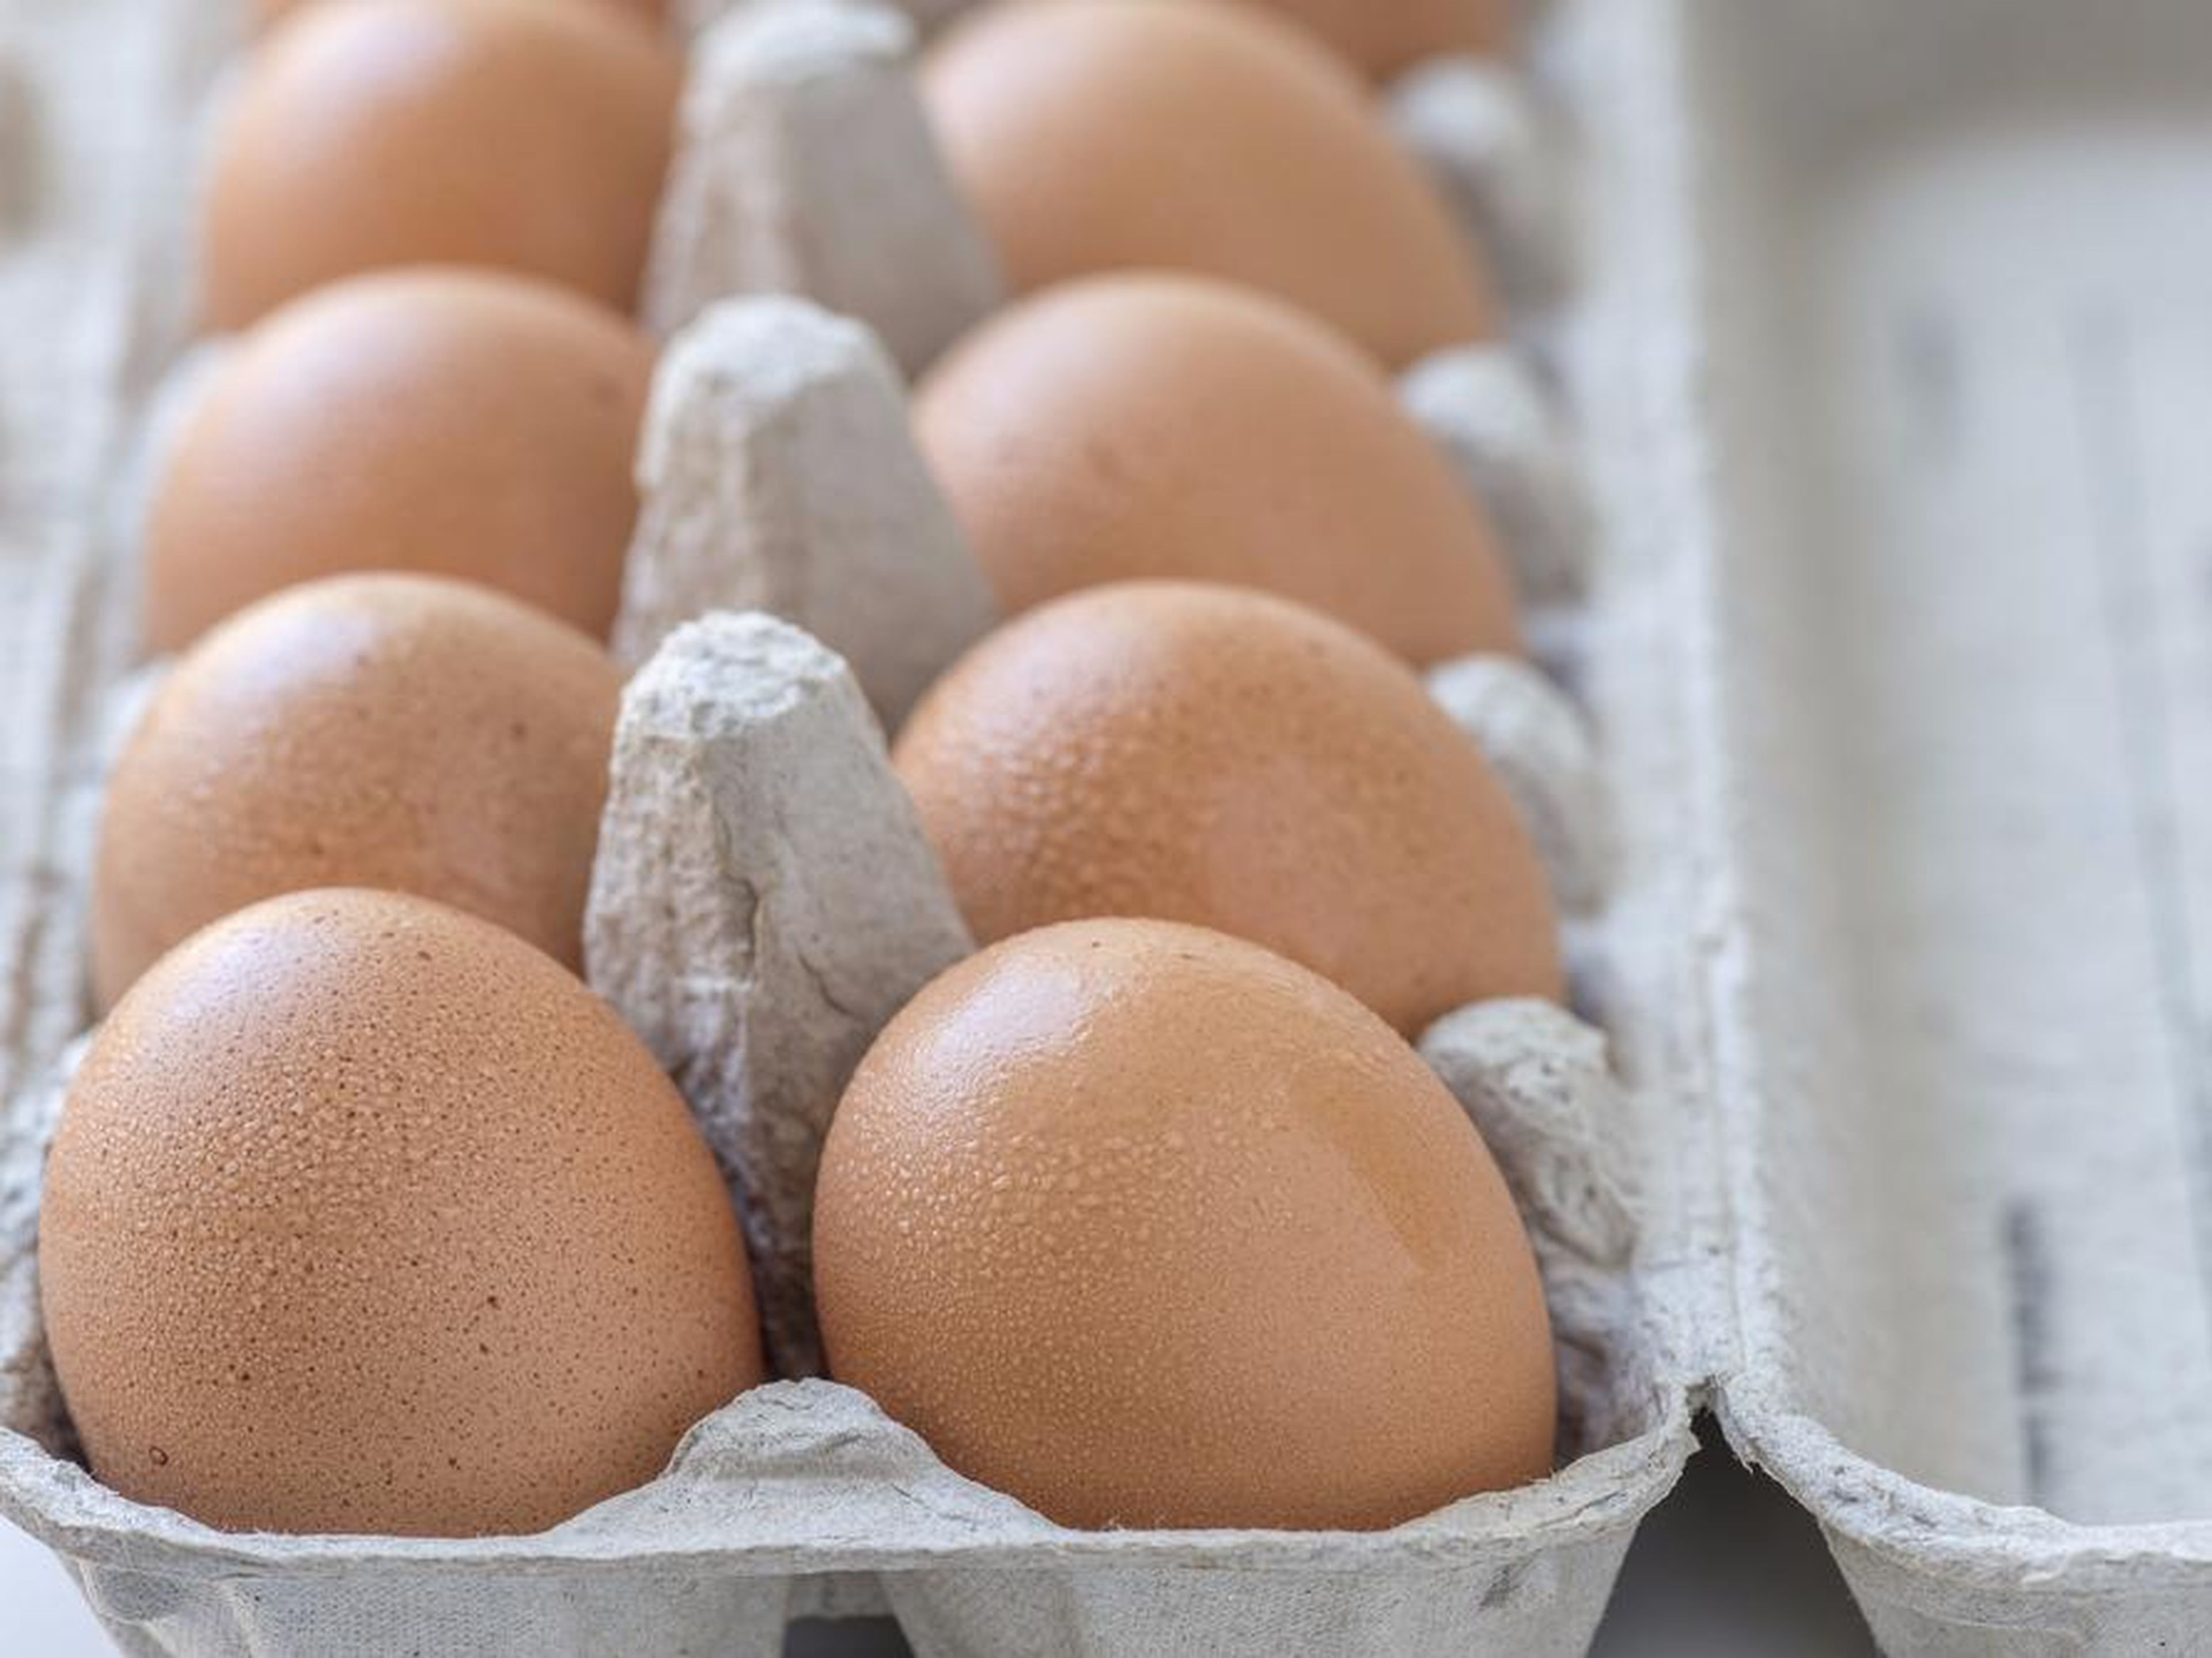 El líquido en el huevo podría contraerse, provocando que el huevo estalle.